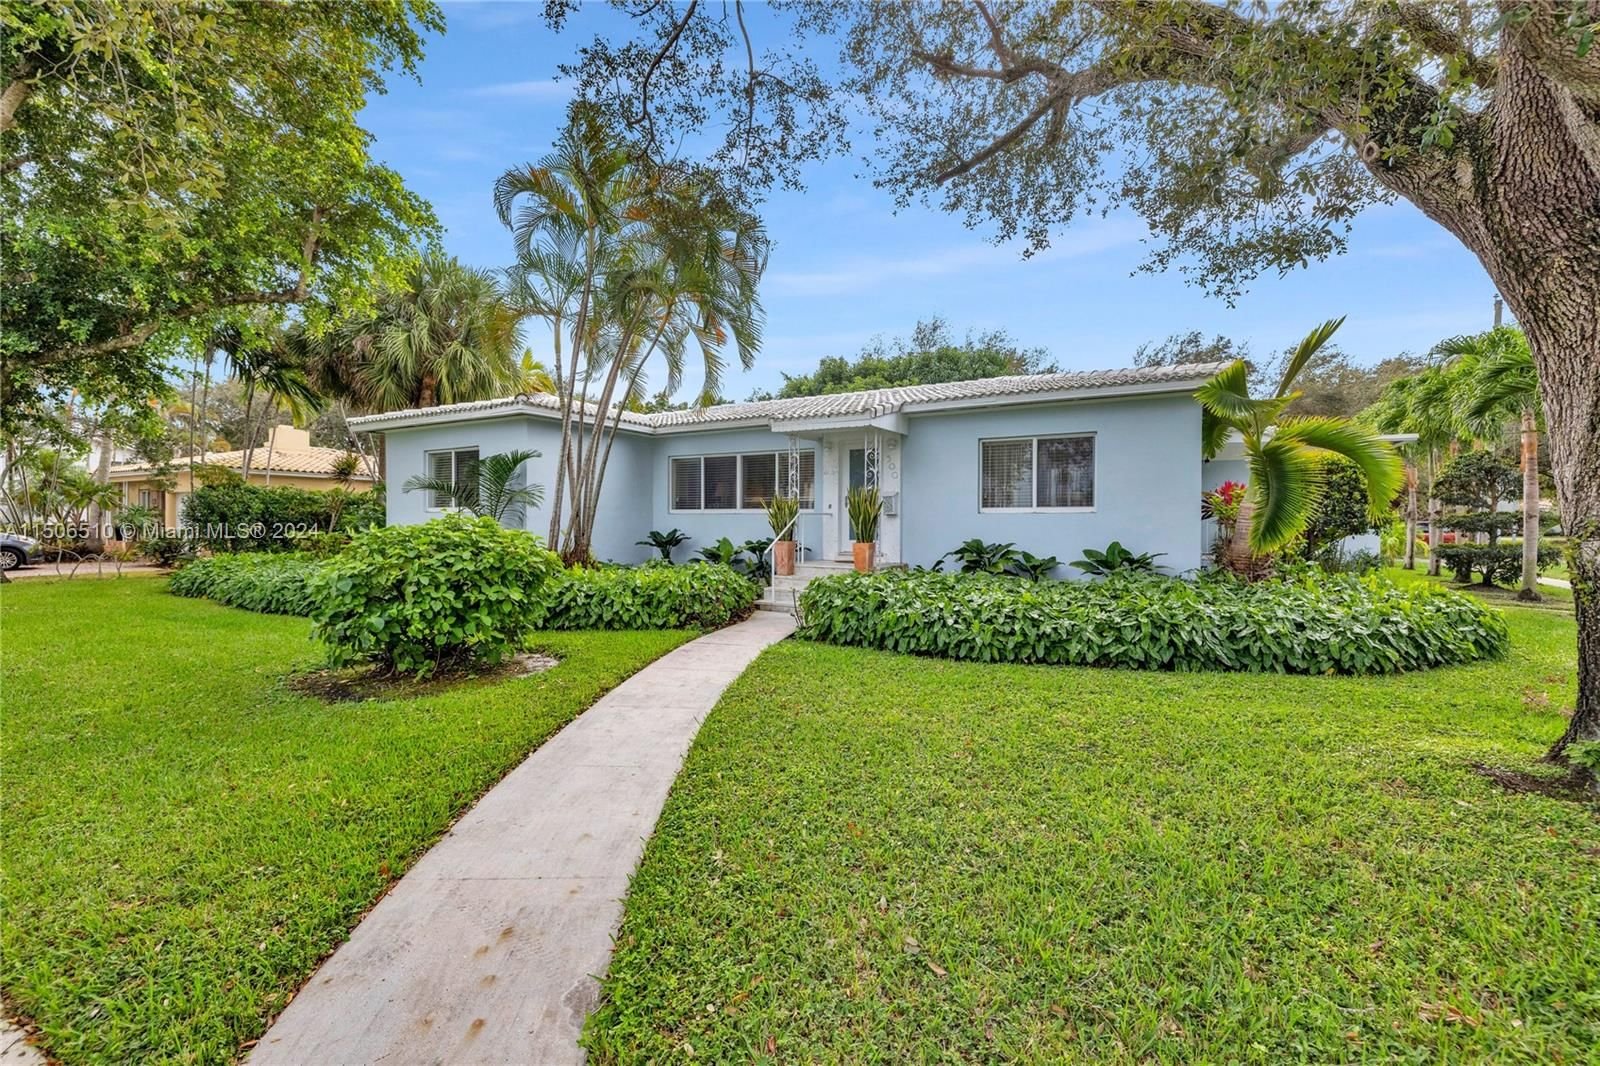 Real estate property located at 500 103 St, Miami-Dade County, MIAMI SHORES SEC 4 AMD PL, Miami Shores, FL